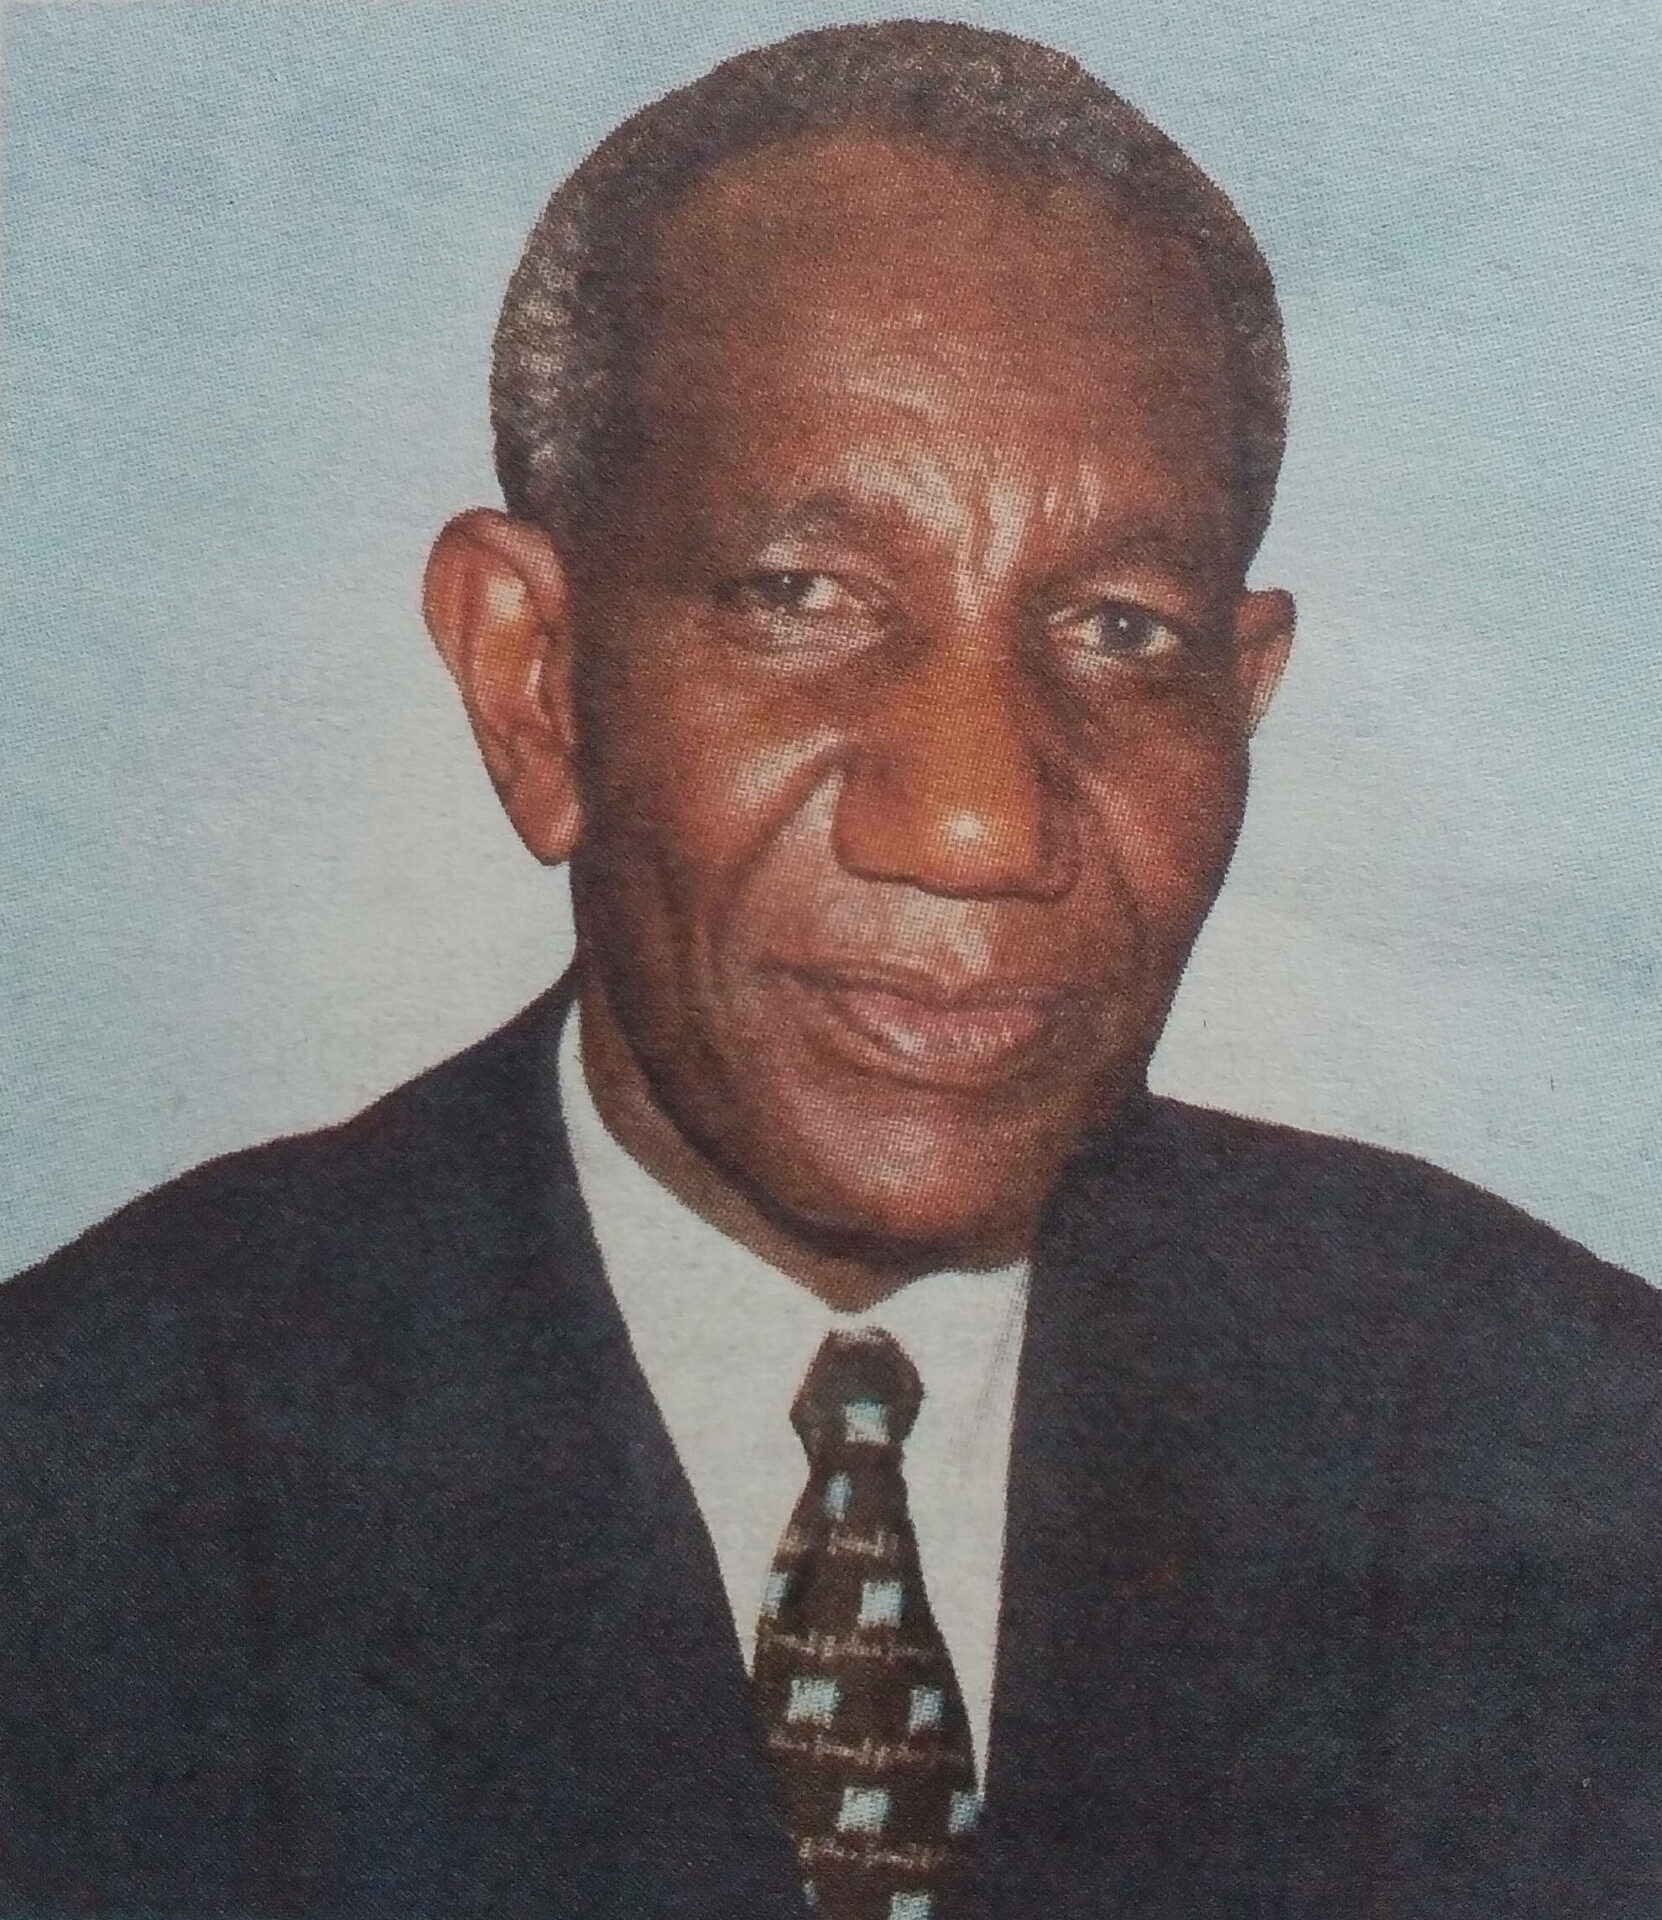 Obituary Image of Apoto Johnstone Gikandi Karuga 15TH AUGUST 1948 - 23RD APRIL 2016